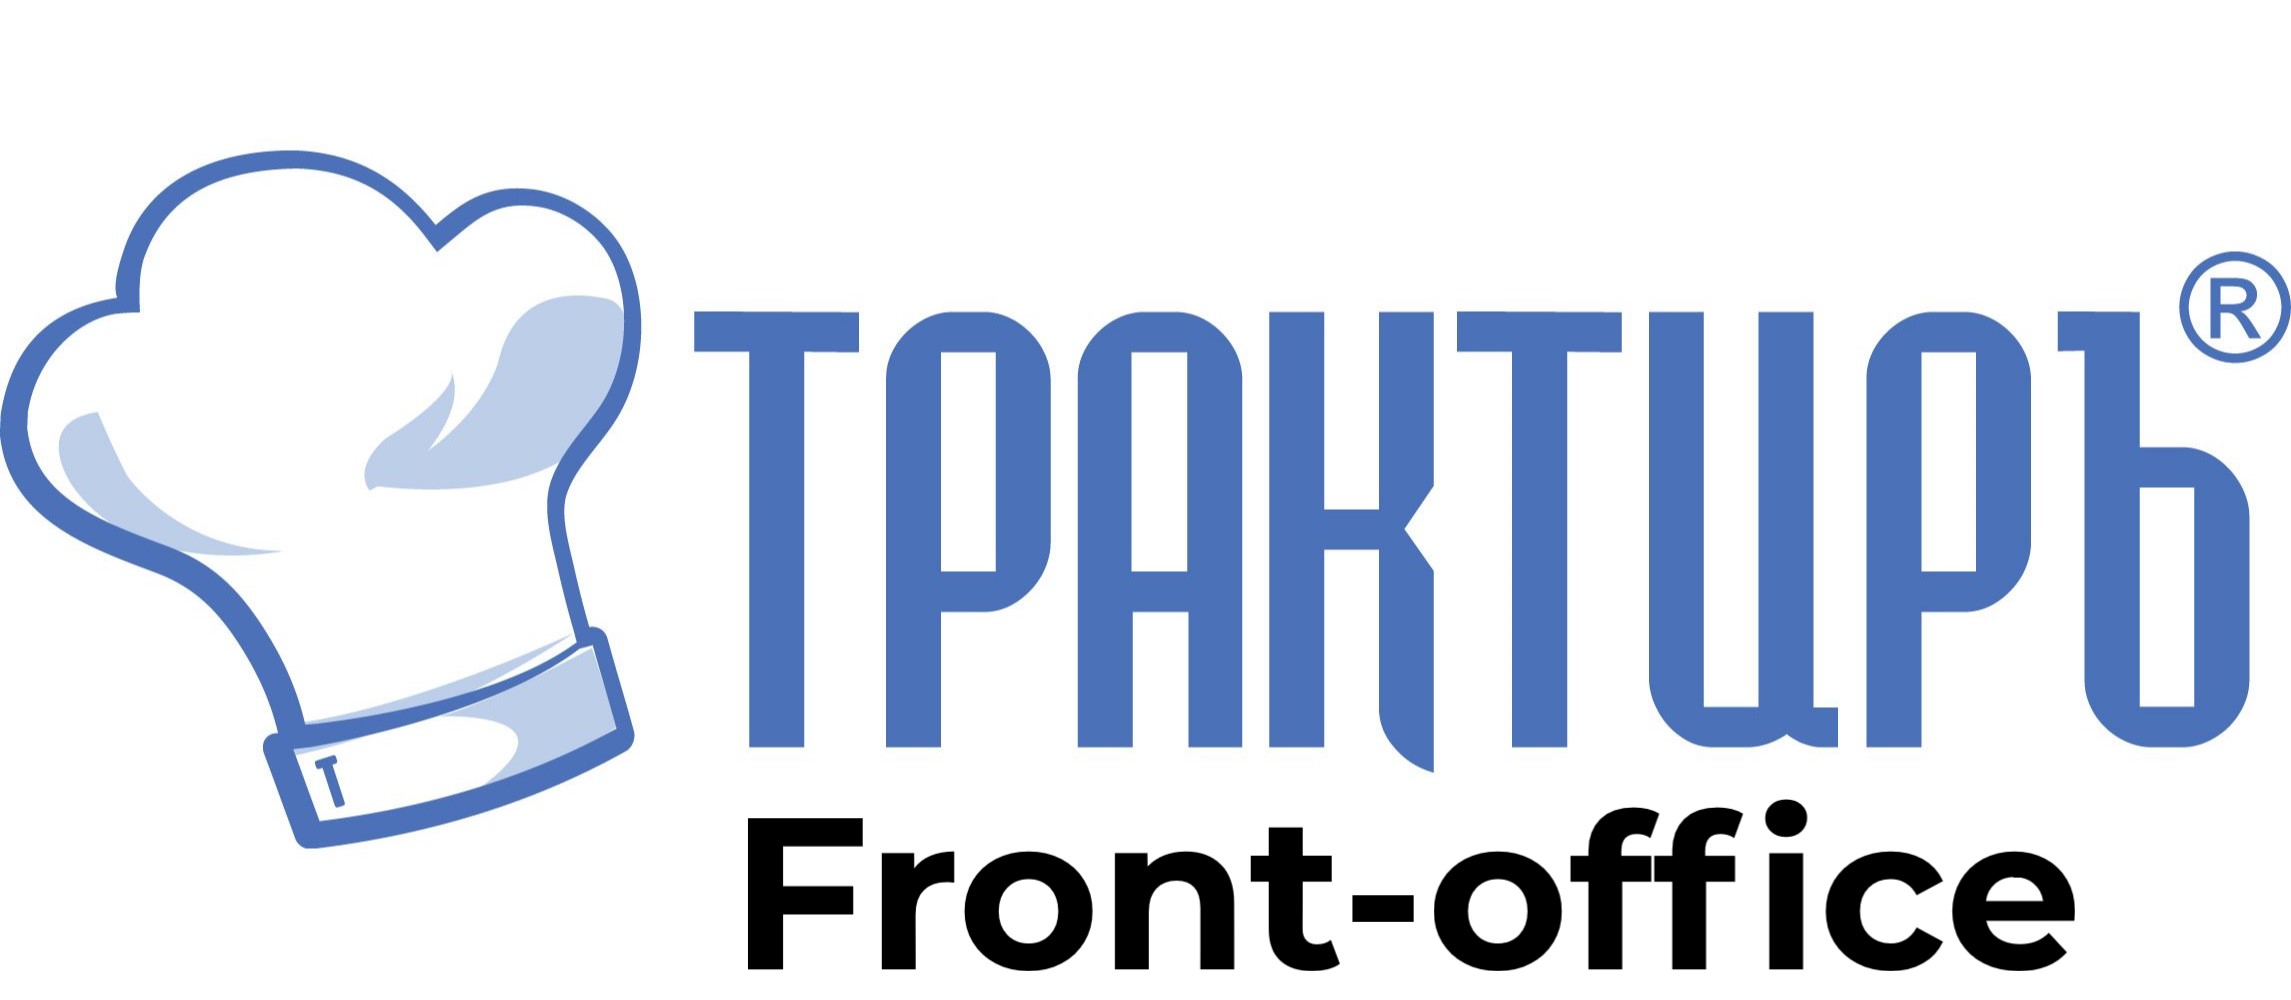 Трактиръ: Front-Office v4.5  Основная поставка в Сыктывкаре